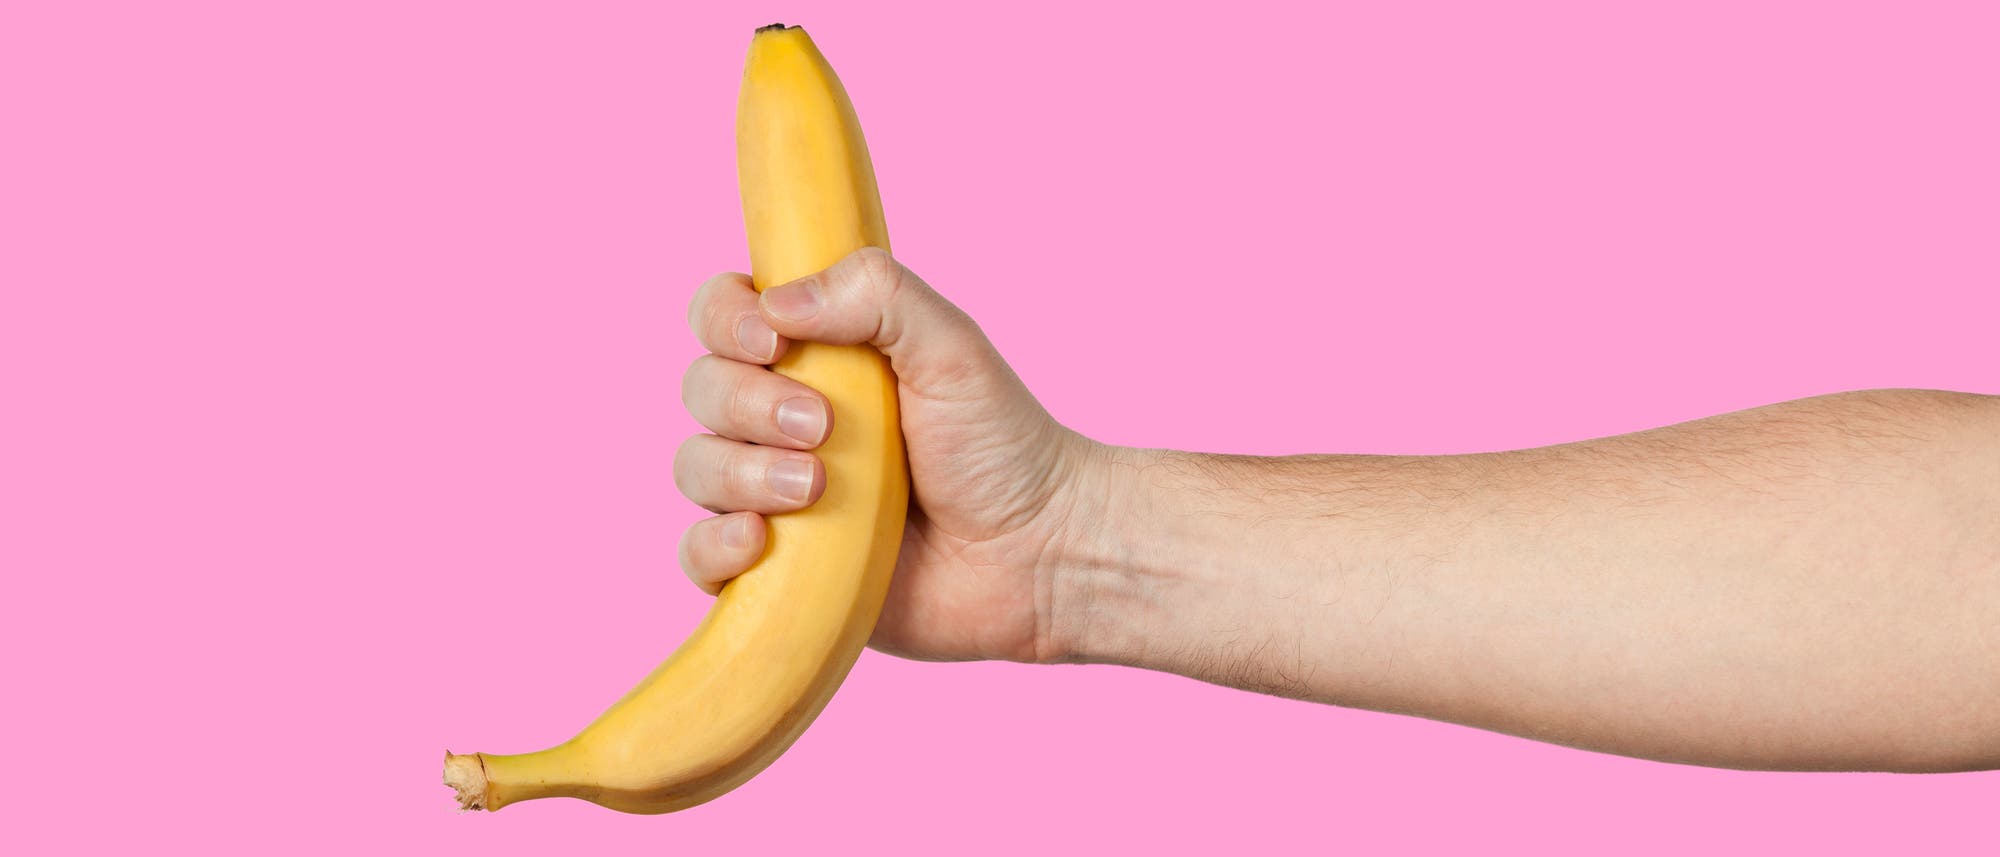 Ein Mann hält eine Banane in der Hand